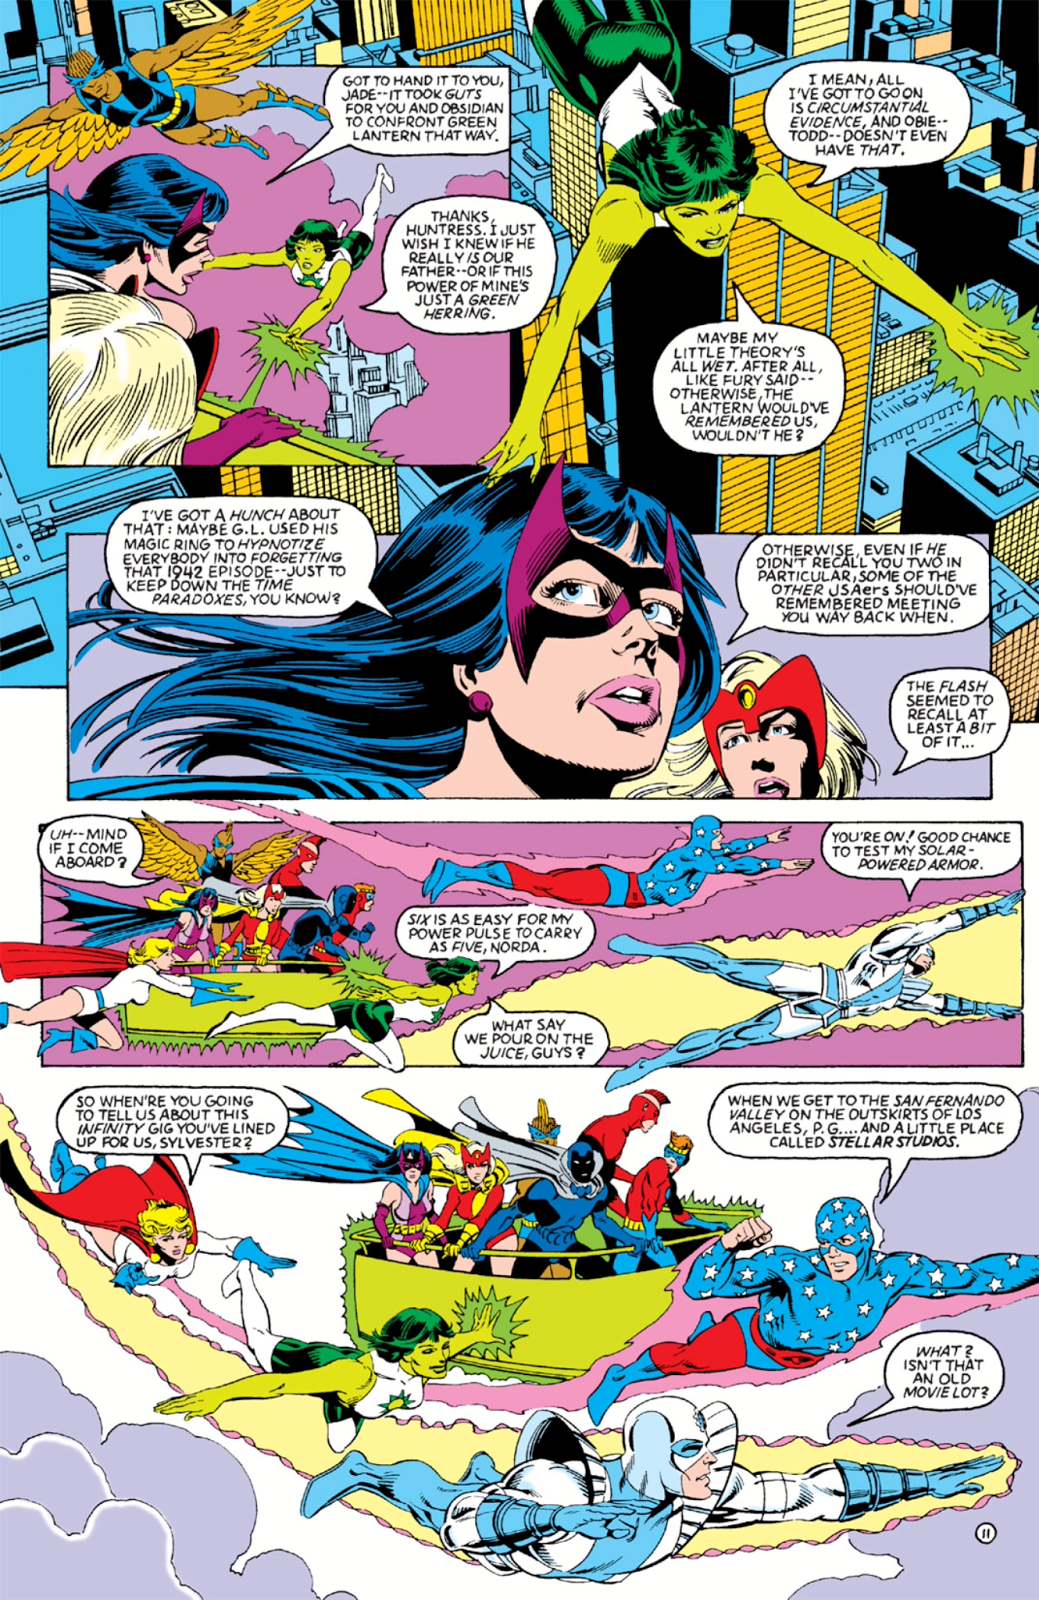 686 - Les comics que vous lisez en ce moment - Page 9 Infinity-Inc-11